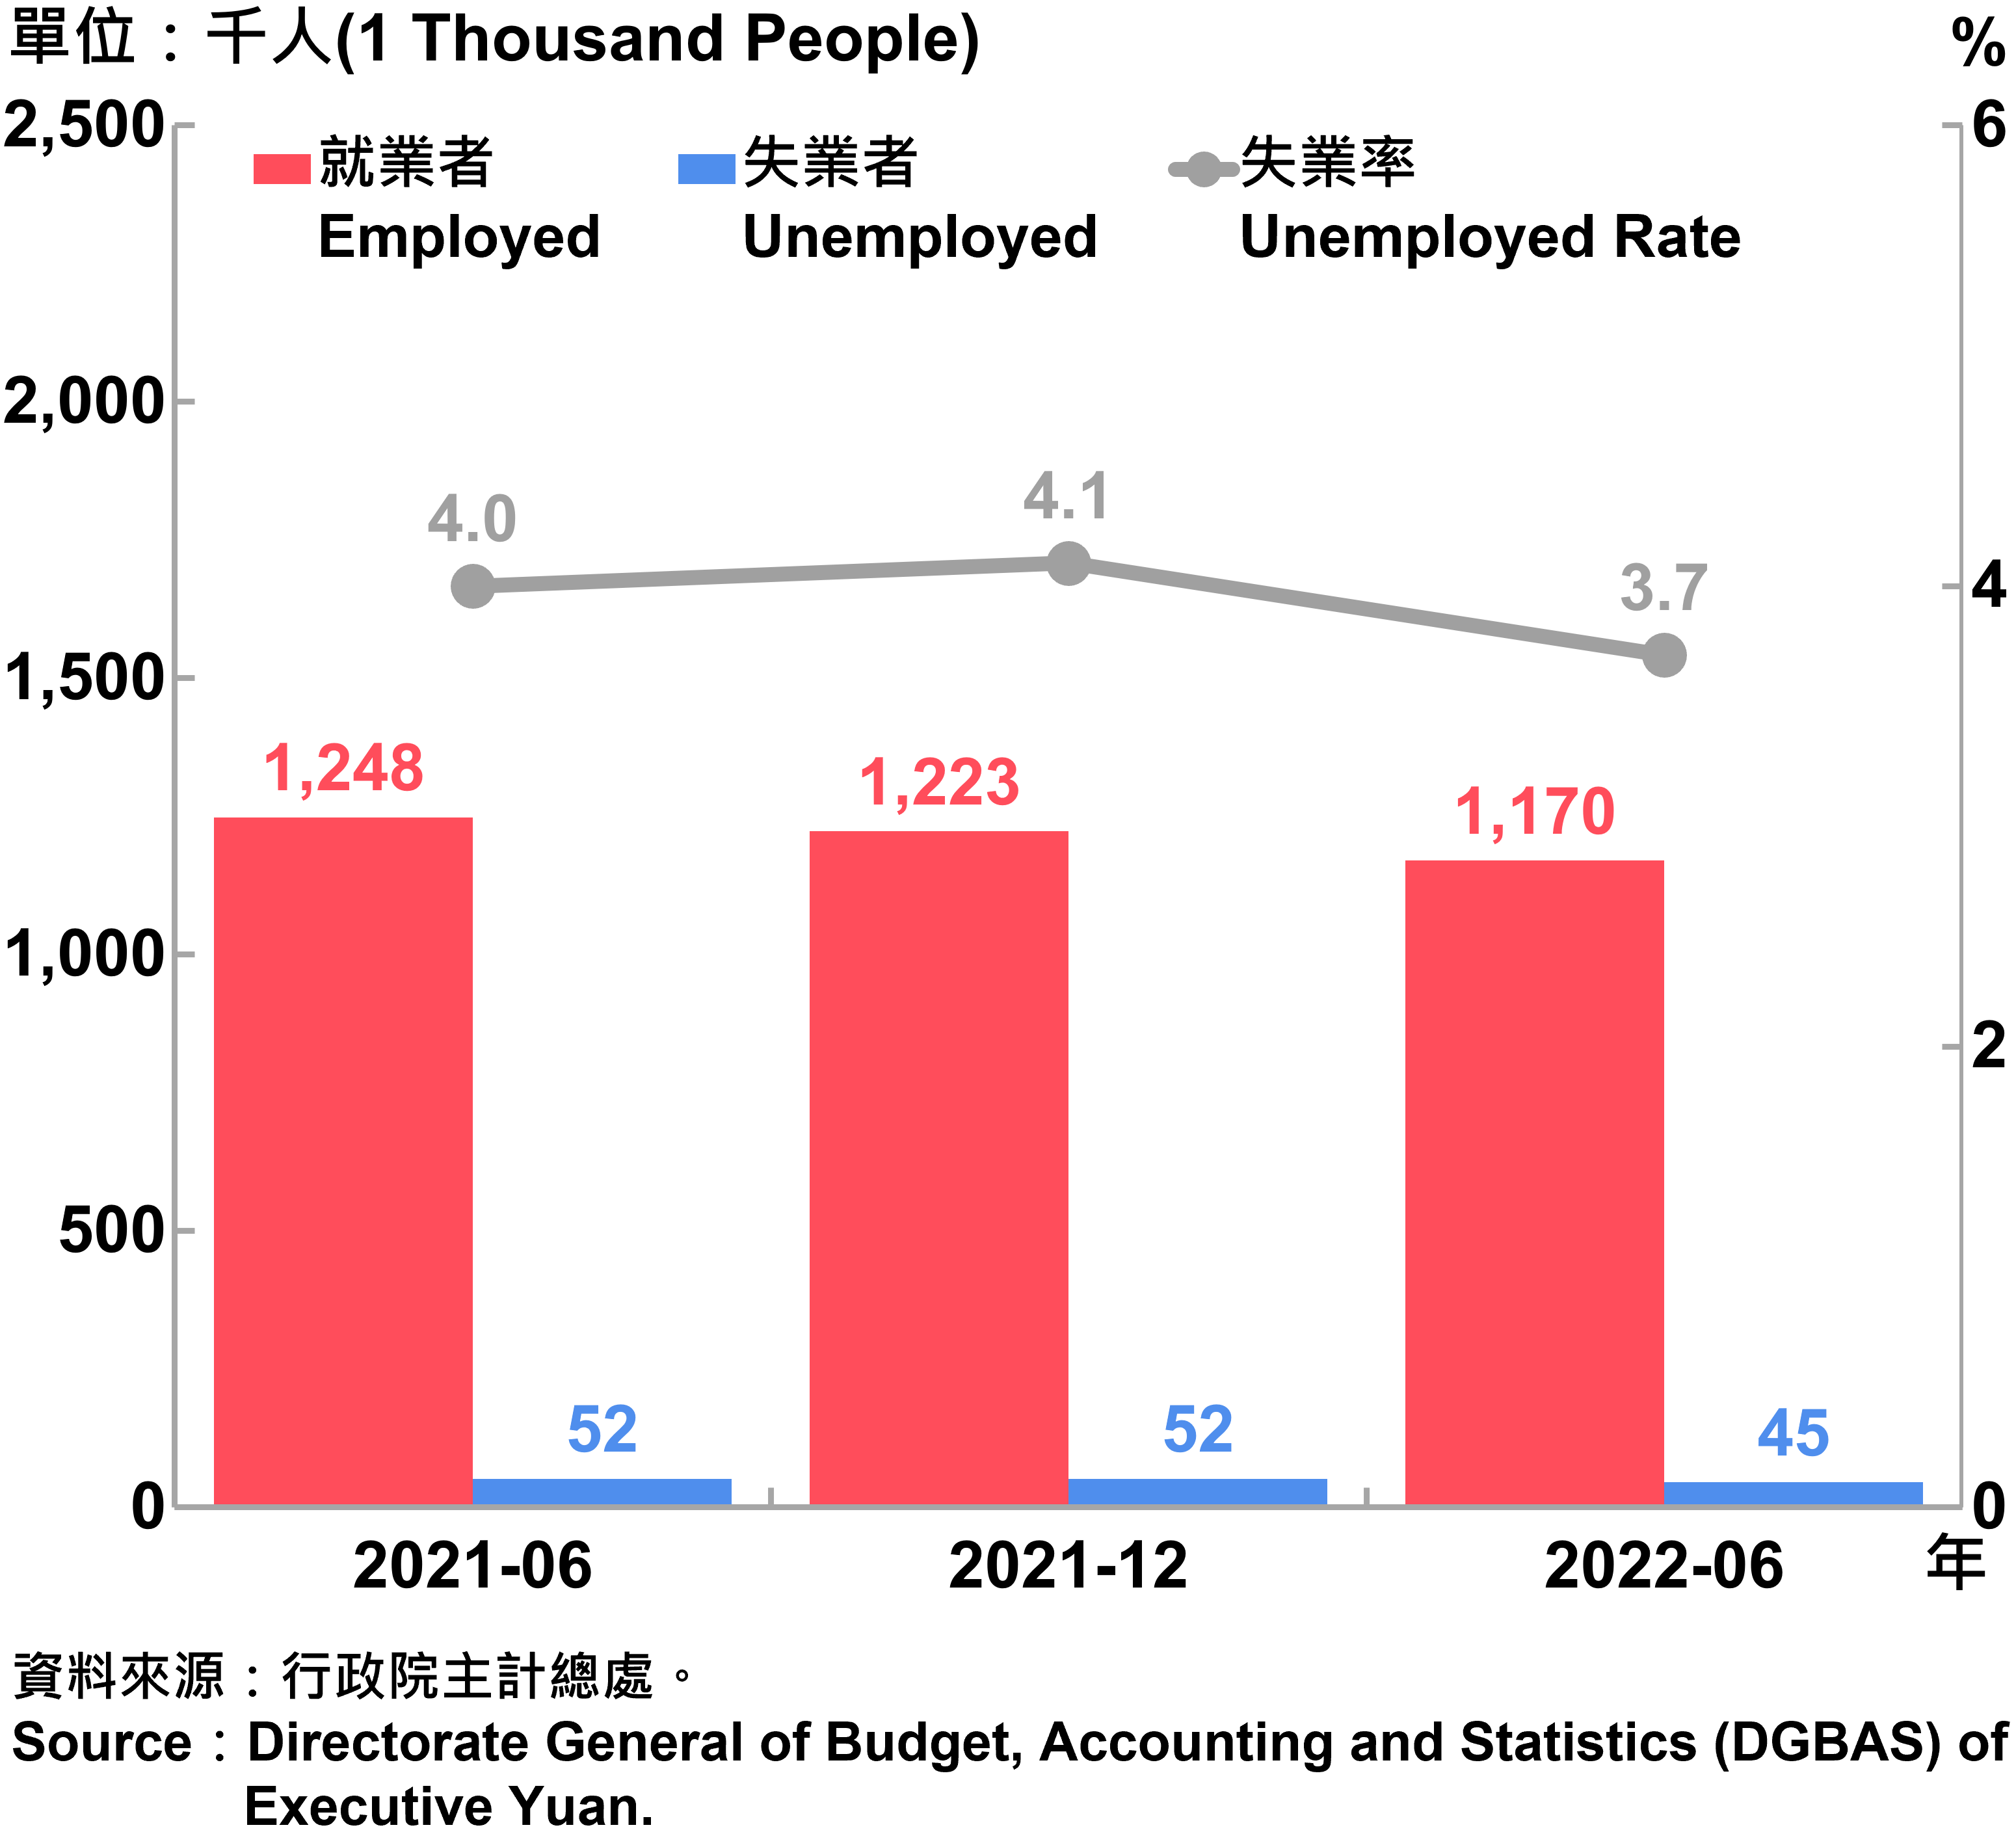 臺北市勞動力人數統計—2022Q2 Labor Force Statistics in Taipei City—2022Q2